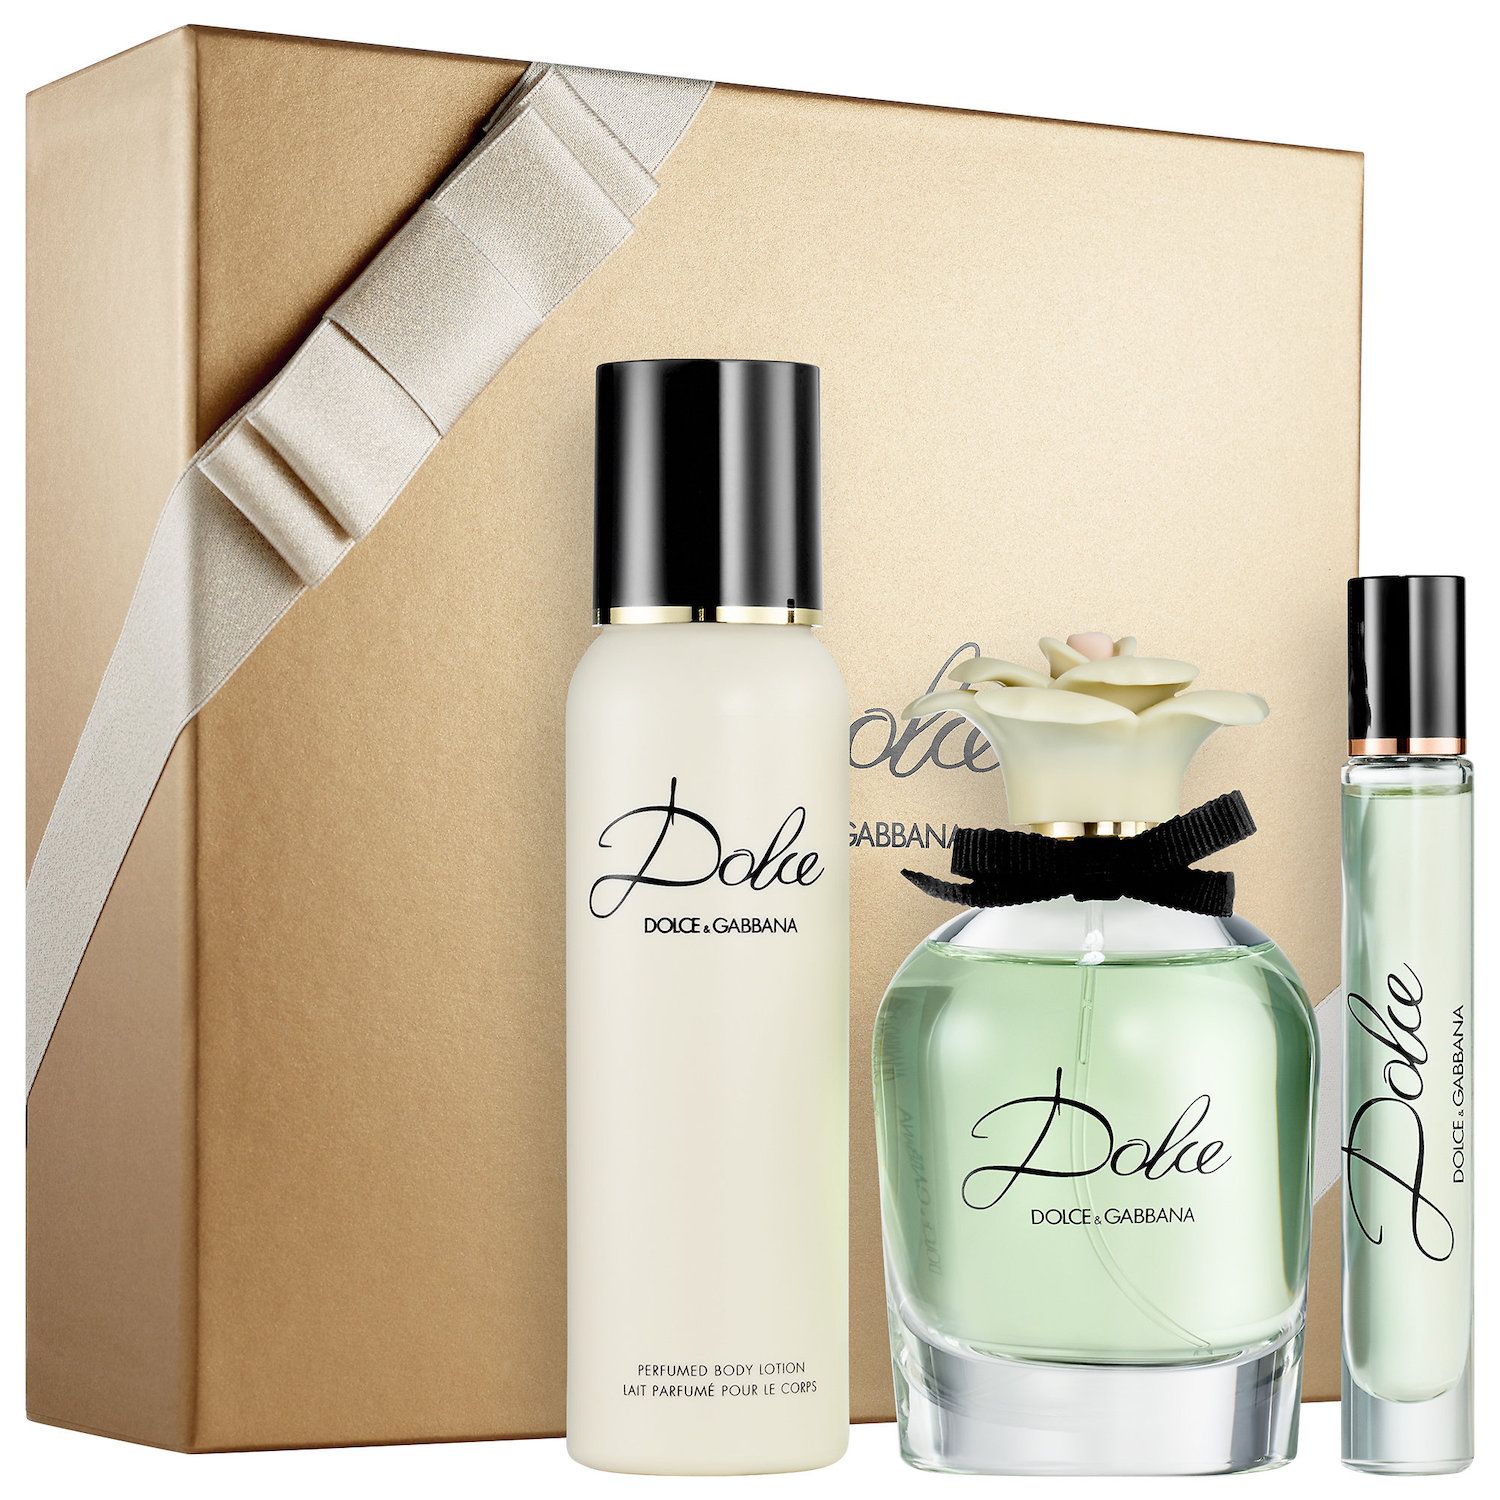 DOLCE \u0026 GABBANA Dolce Women's Perfume 